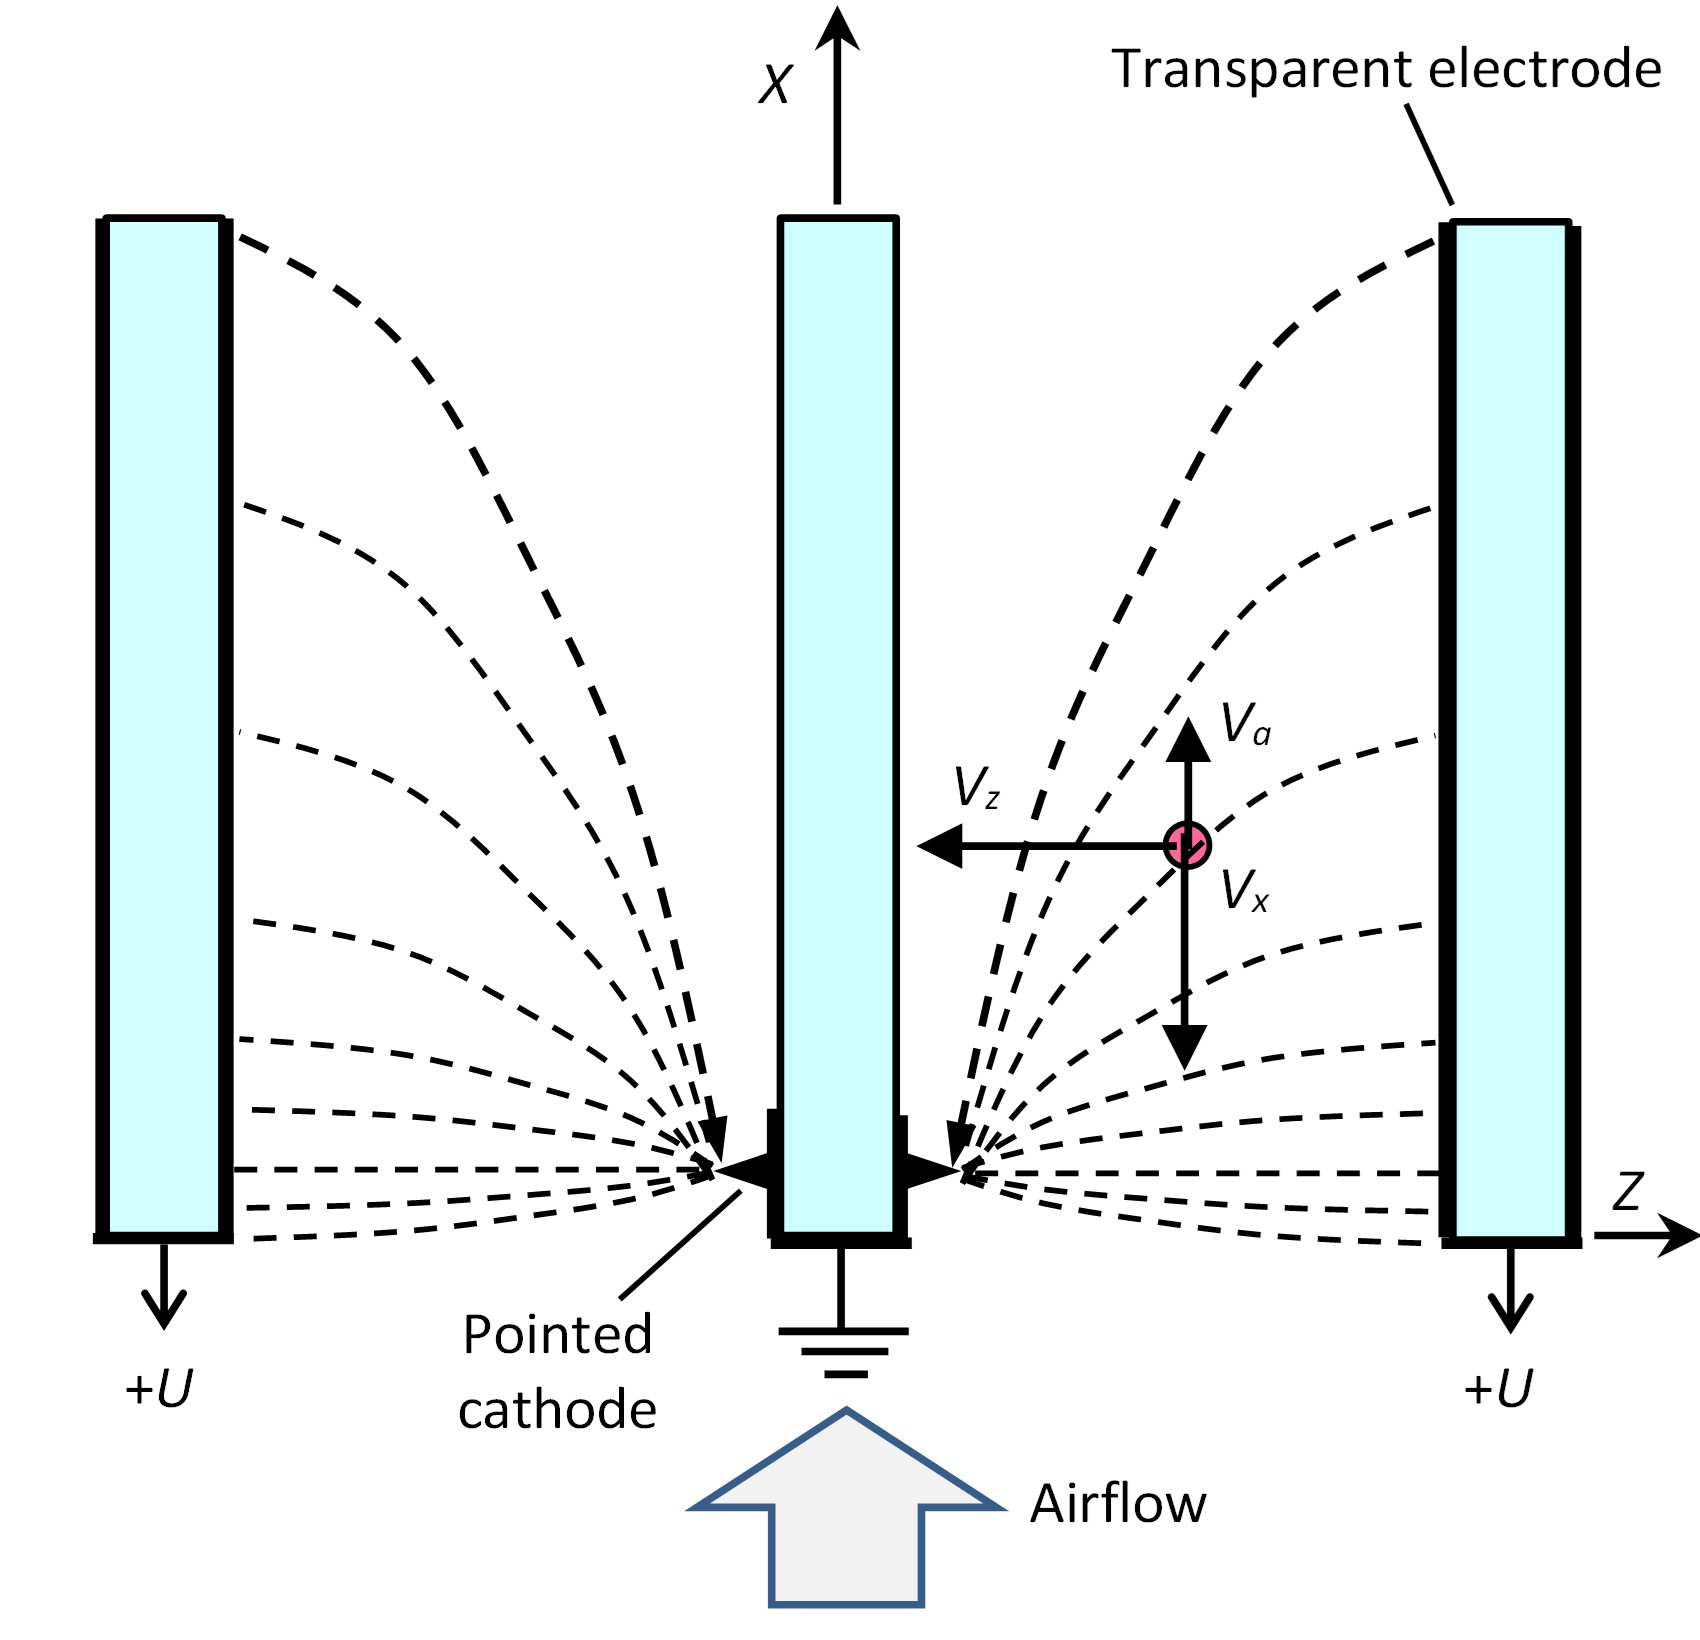 Розподіл електричного поля в ділянці вікна з електростатичною фільтрацією (вид зверху). Показано складові швидкості для позитивно зарядженої частинки, яка рухається під впливом повітряного потоку (Va) та електричного поля (Vx і Vz)